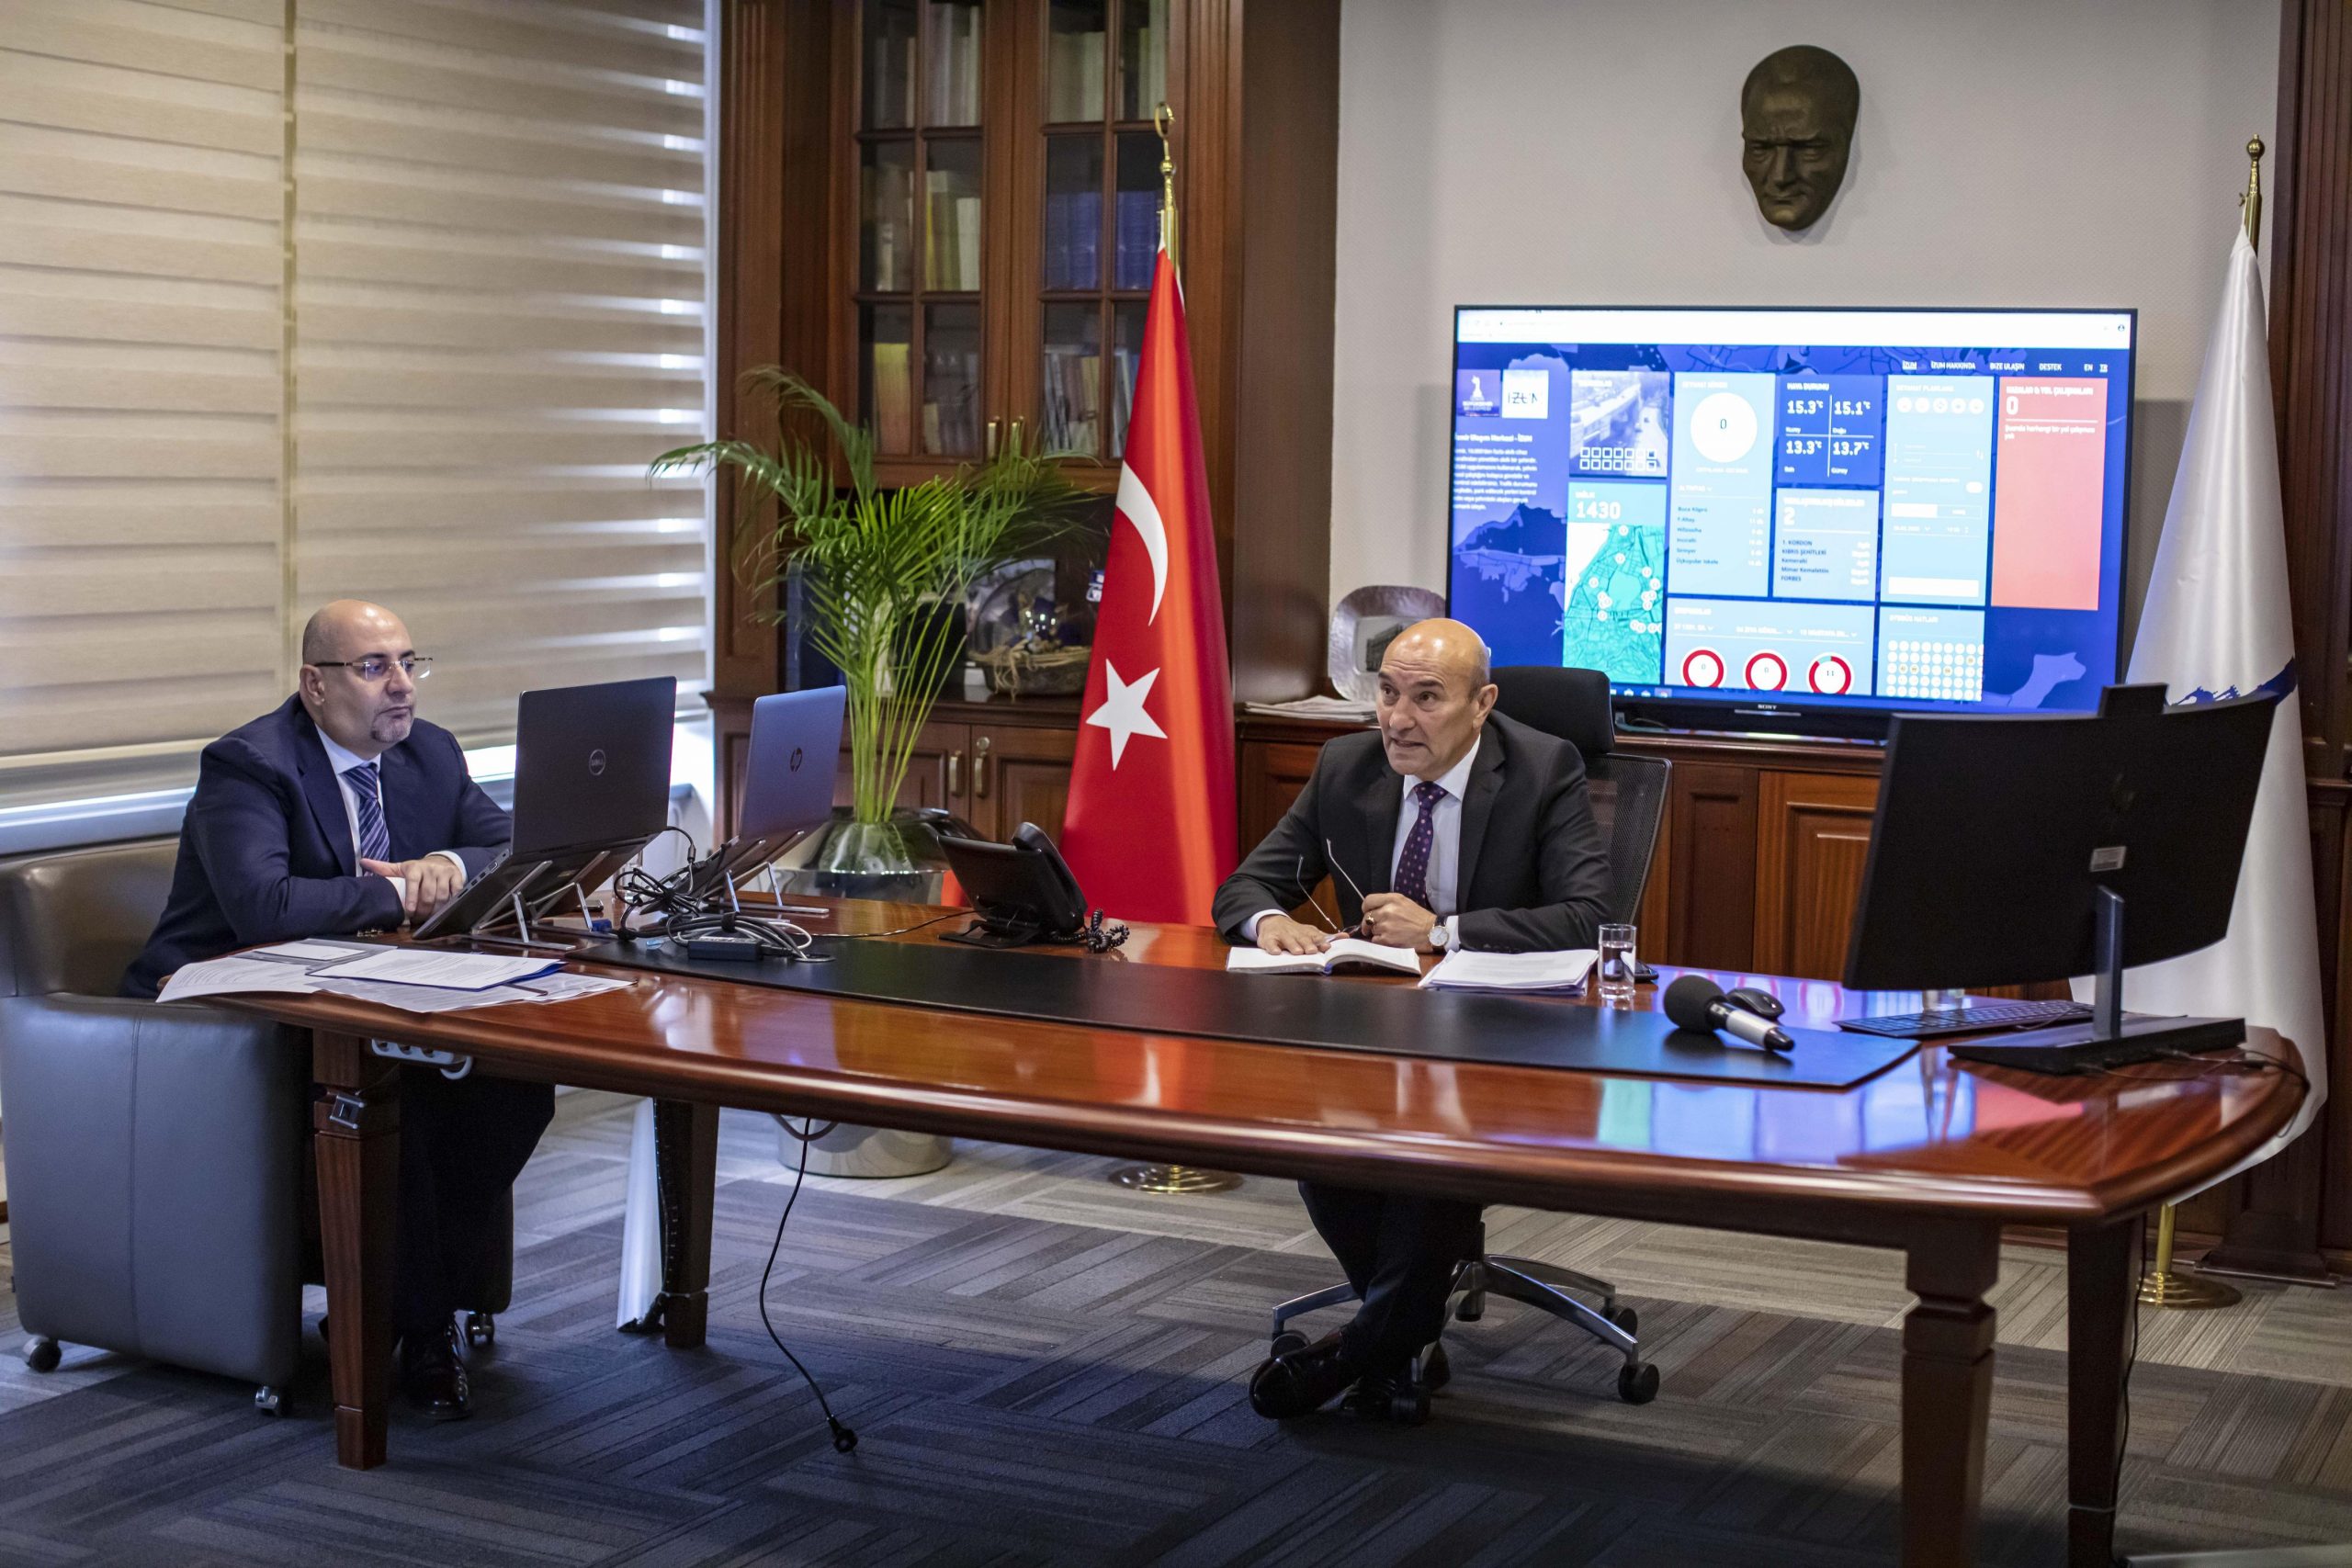 İzmir Büyükşehir kriz belediyeciliğine geçti